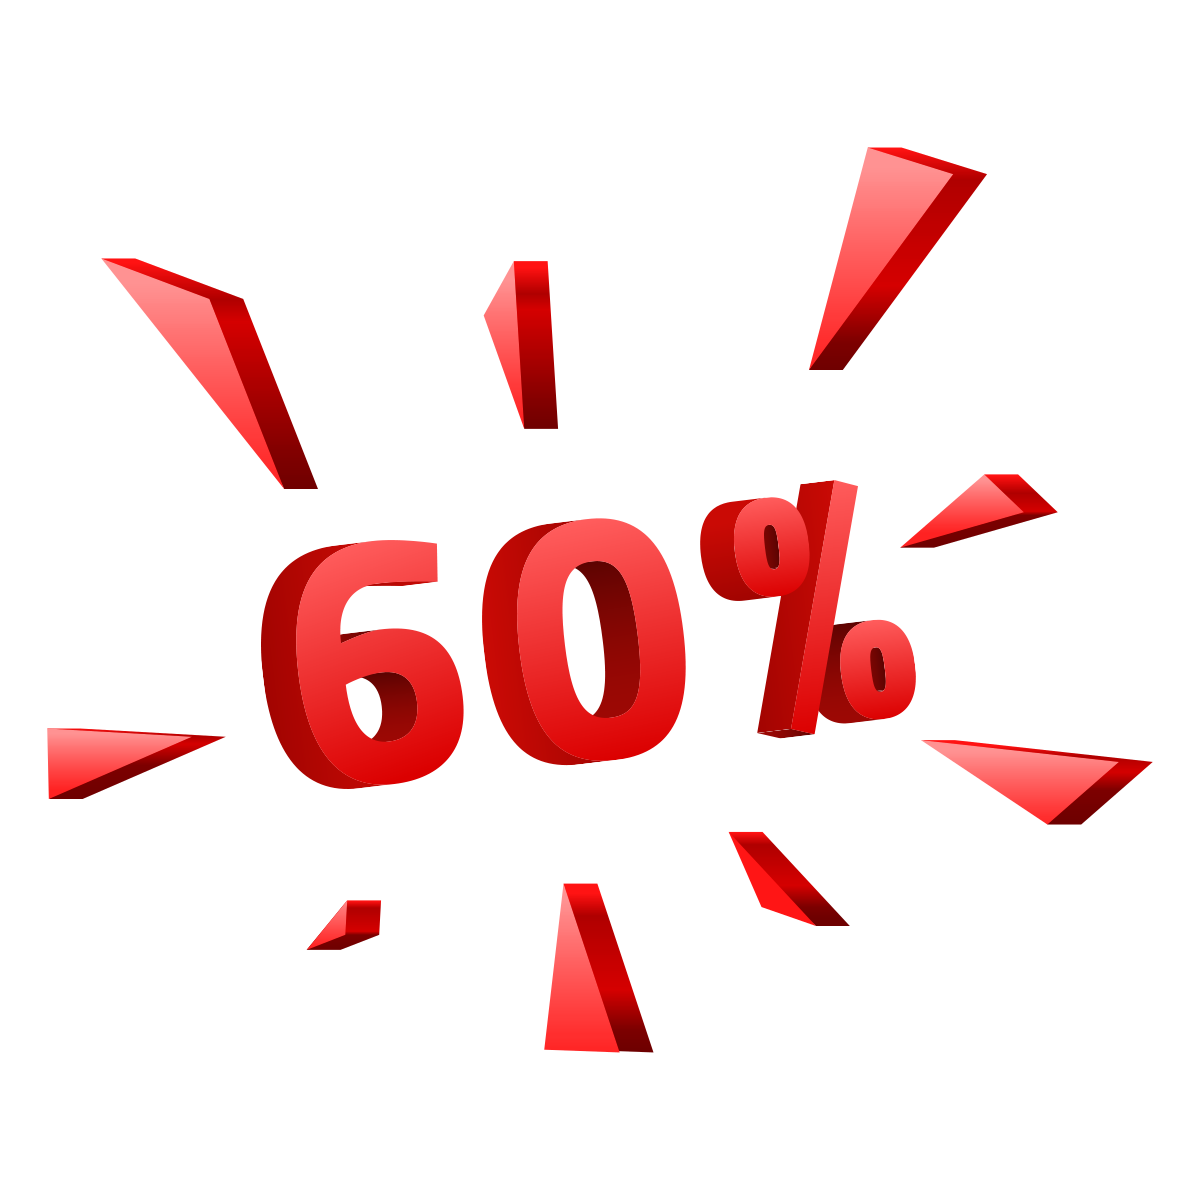 Sale 60%